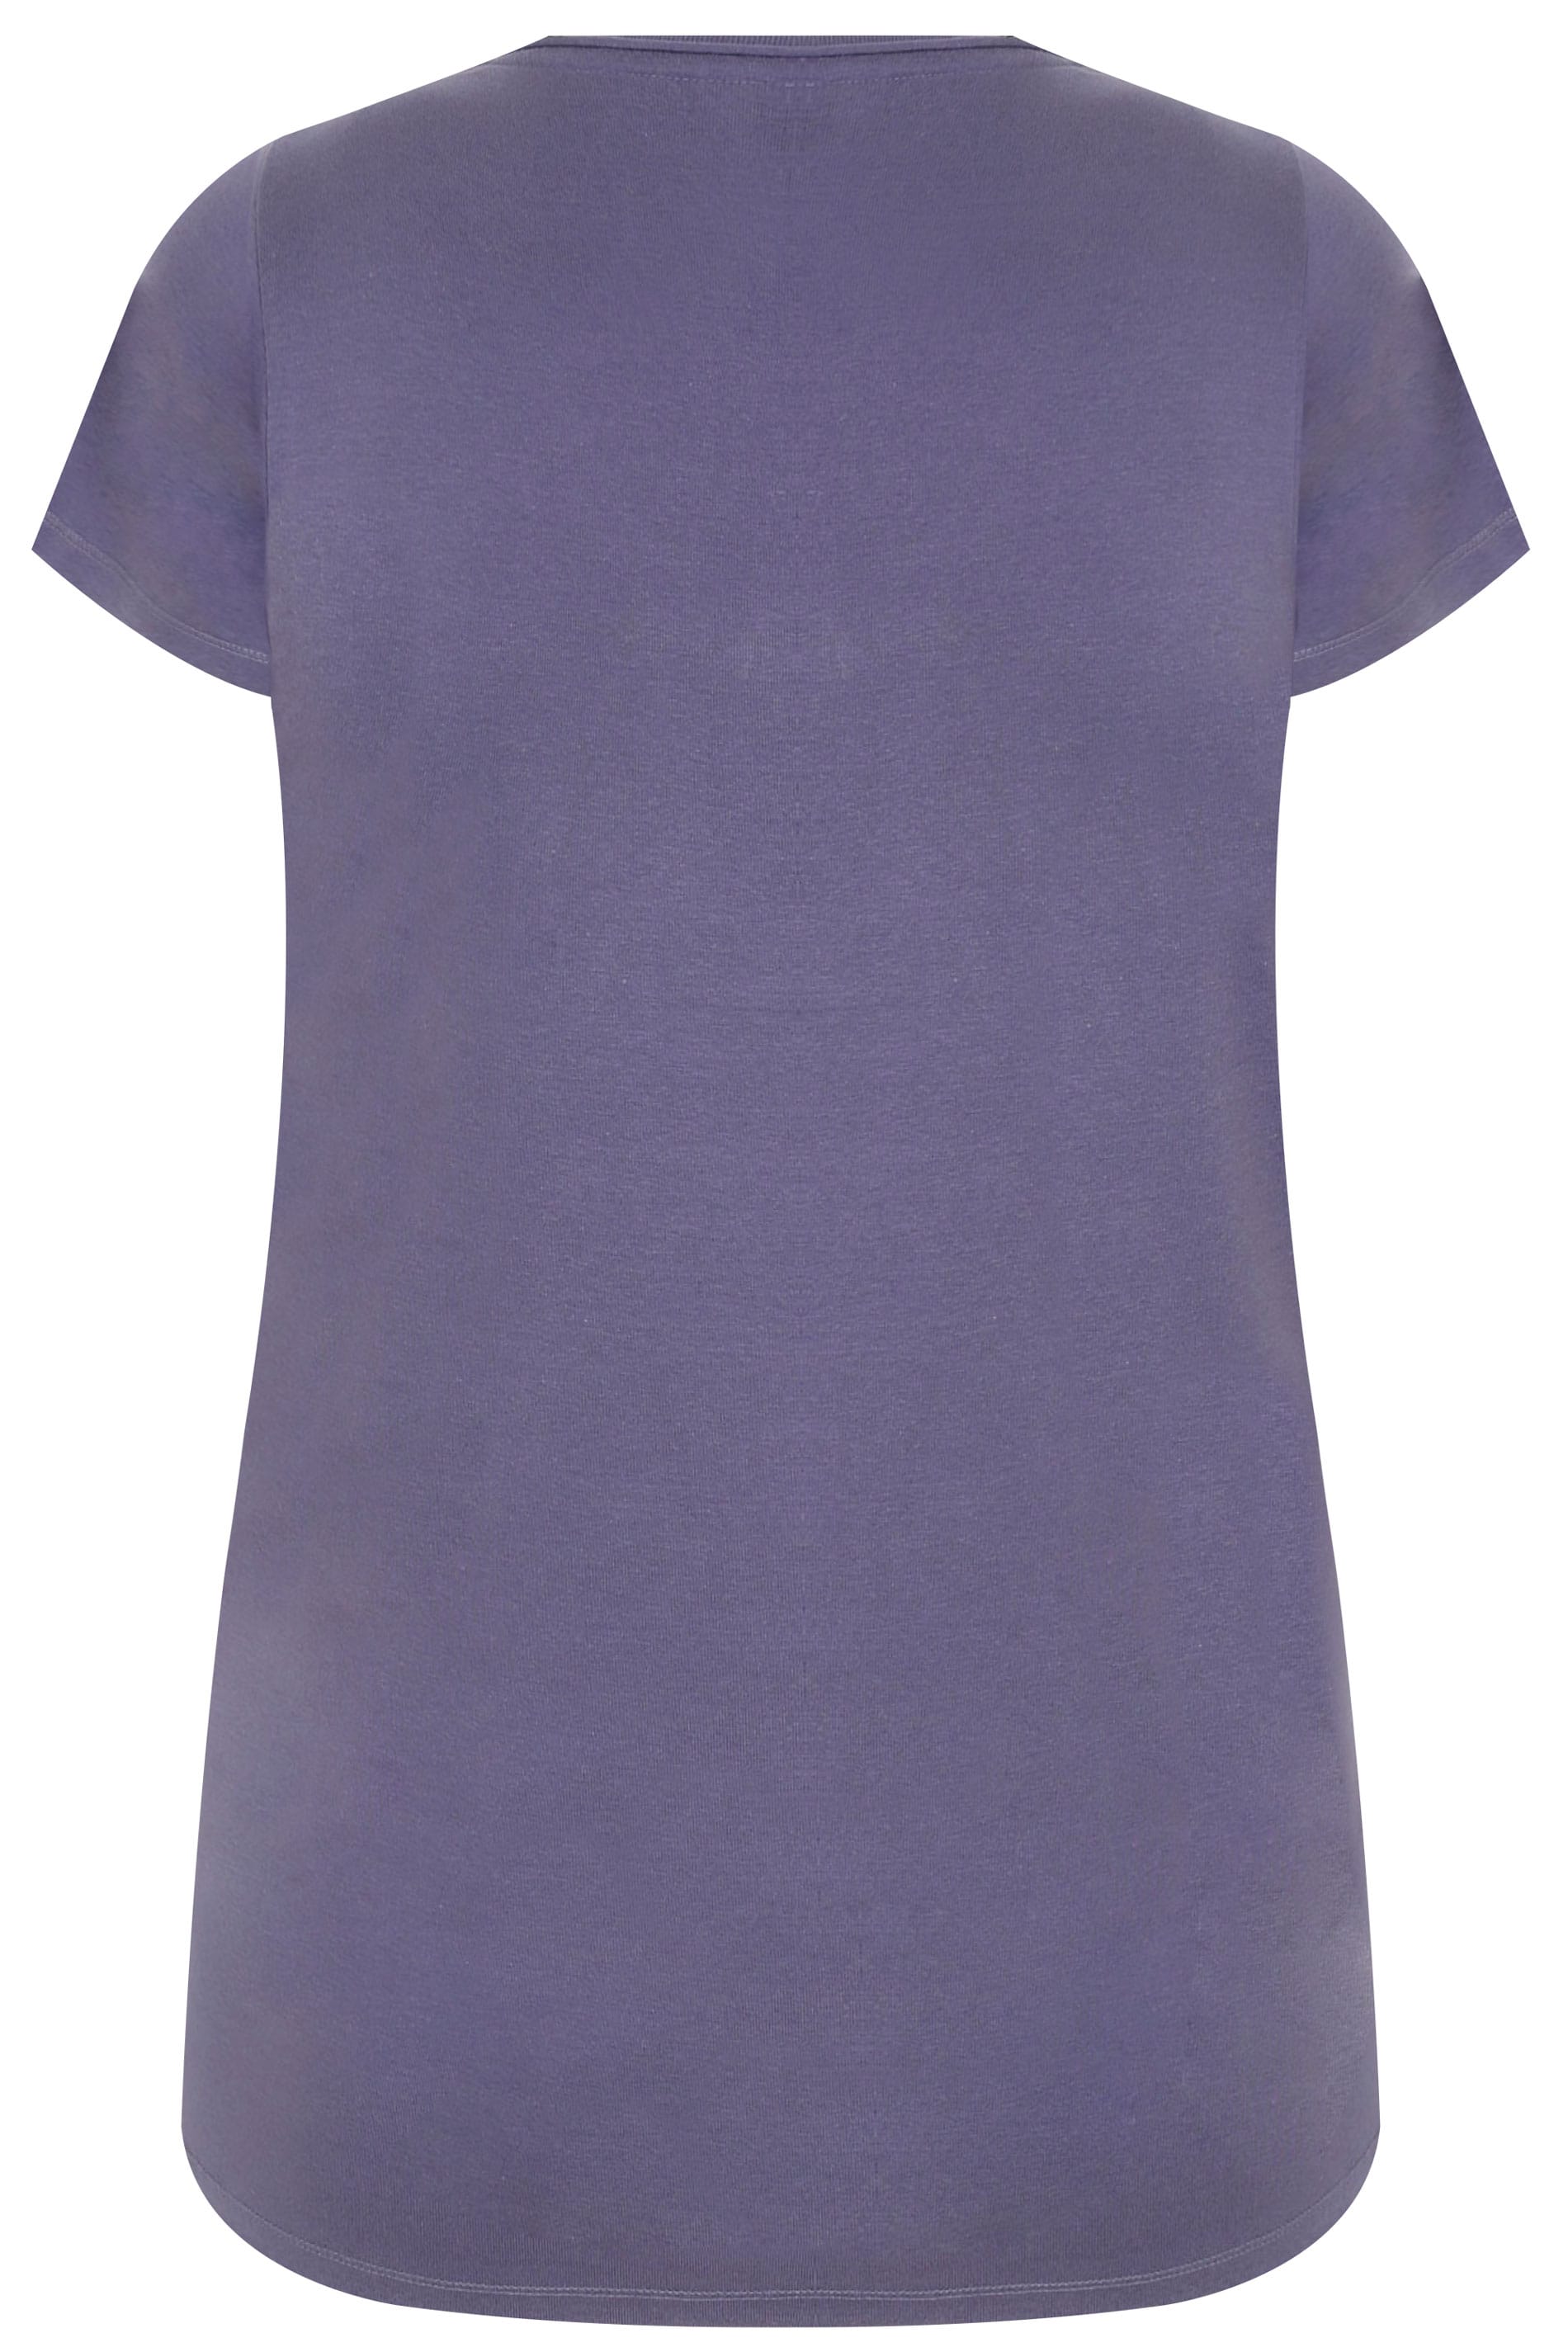 Dusky Purple Short Sleeved V Neck Basic T Shirt Plus Size 16 To 36